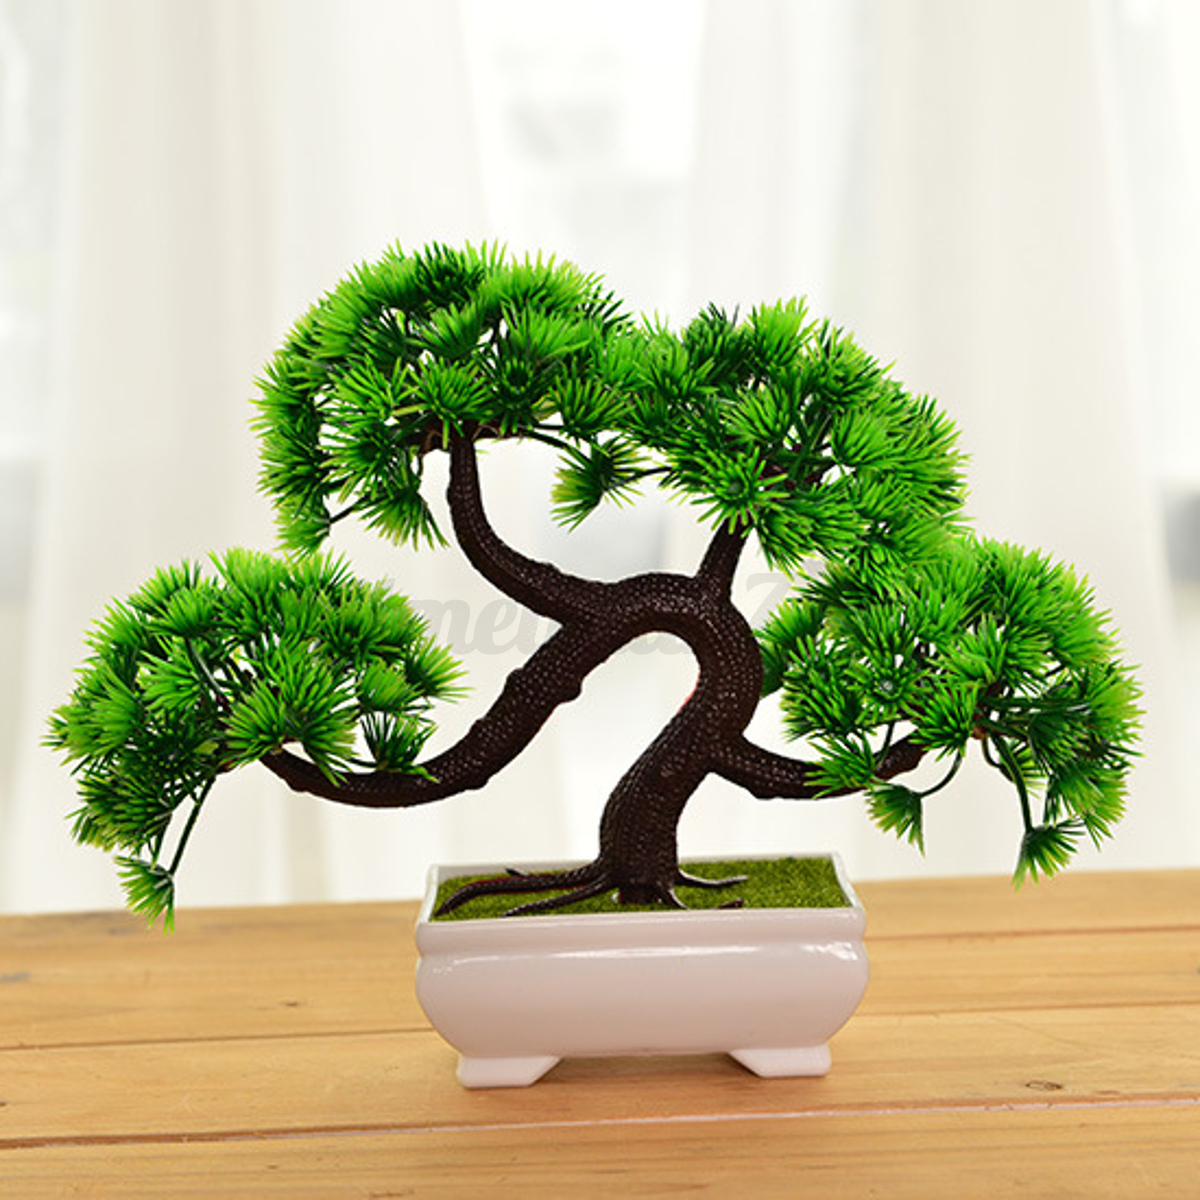 Artificial bonsai tree for desk